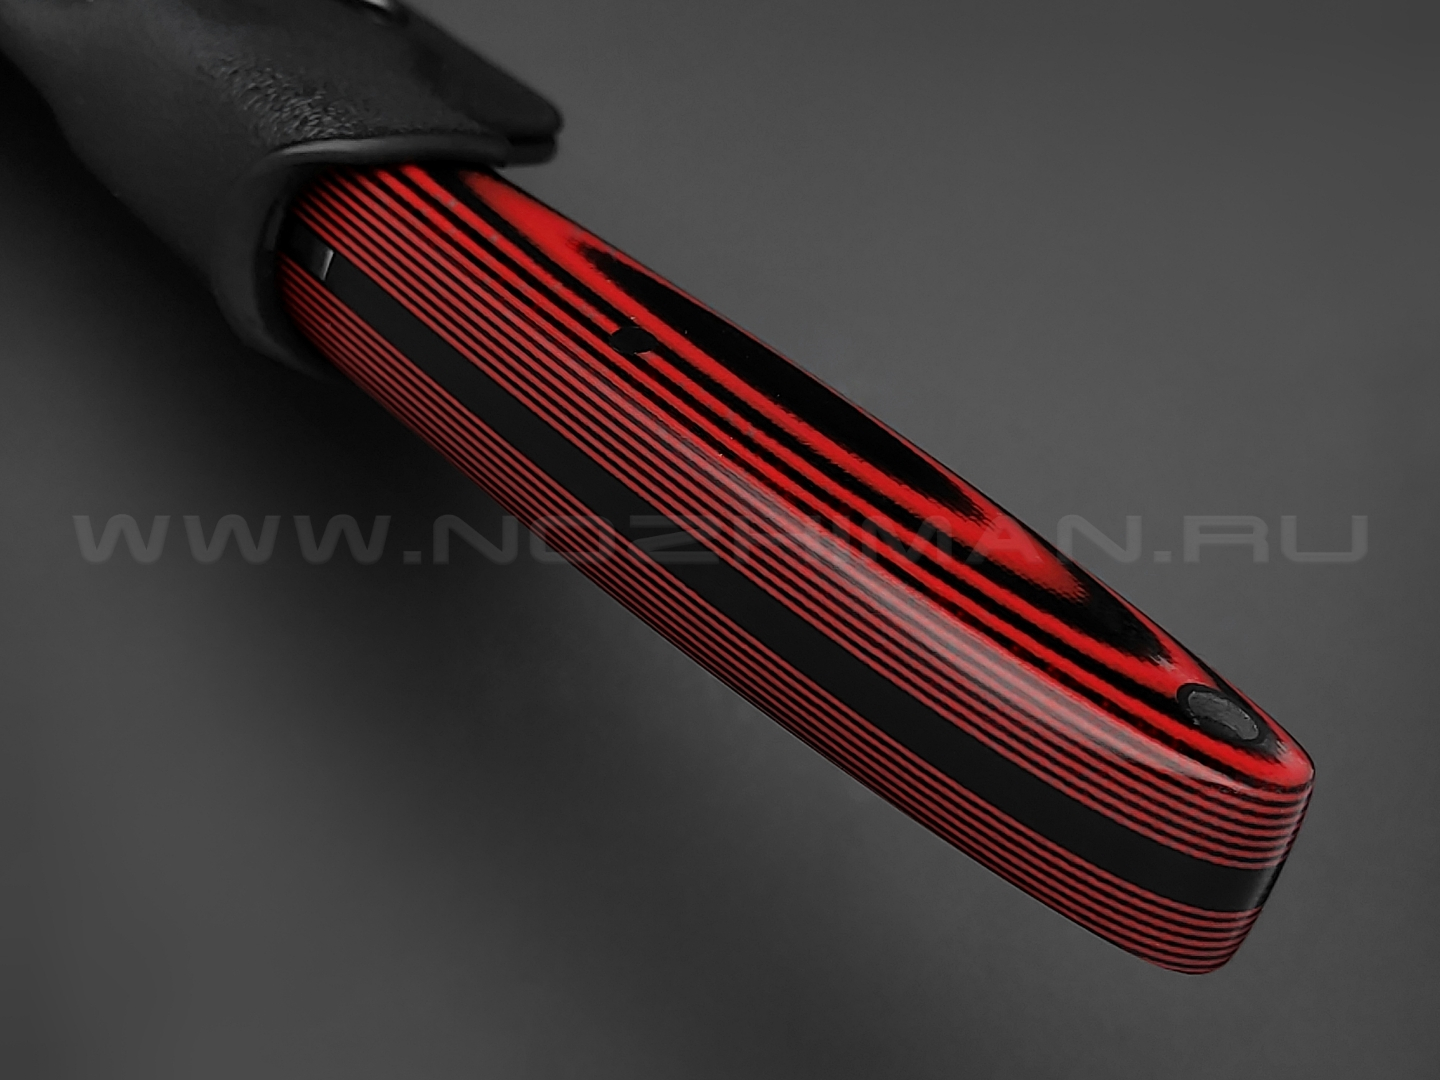 Apus Knives нож Wilson Long сталь N690, рукоять G10 black & red